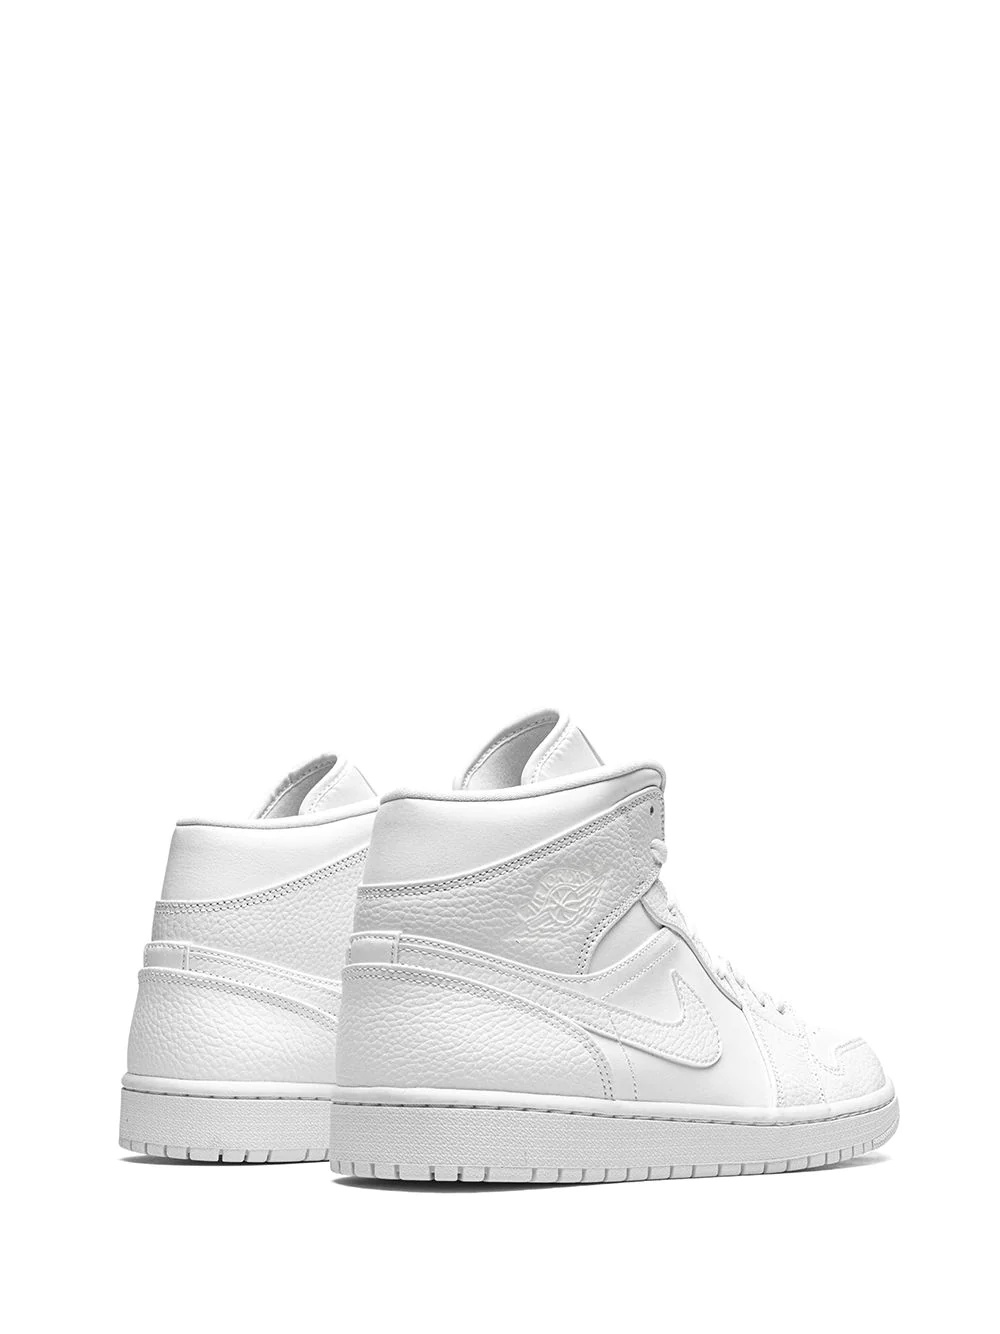 Air Jordan 1 Mid "Triple White" sneakers - 3